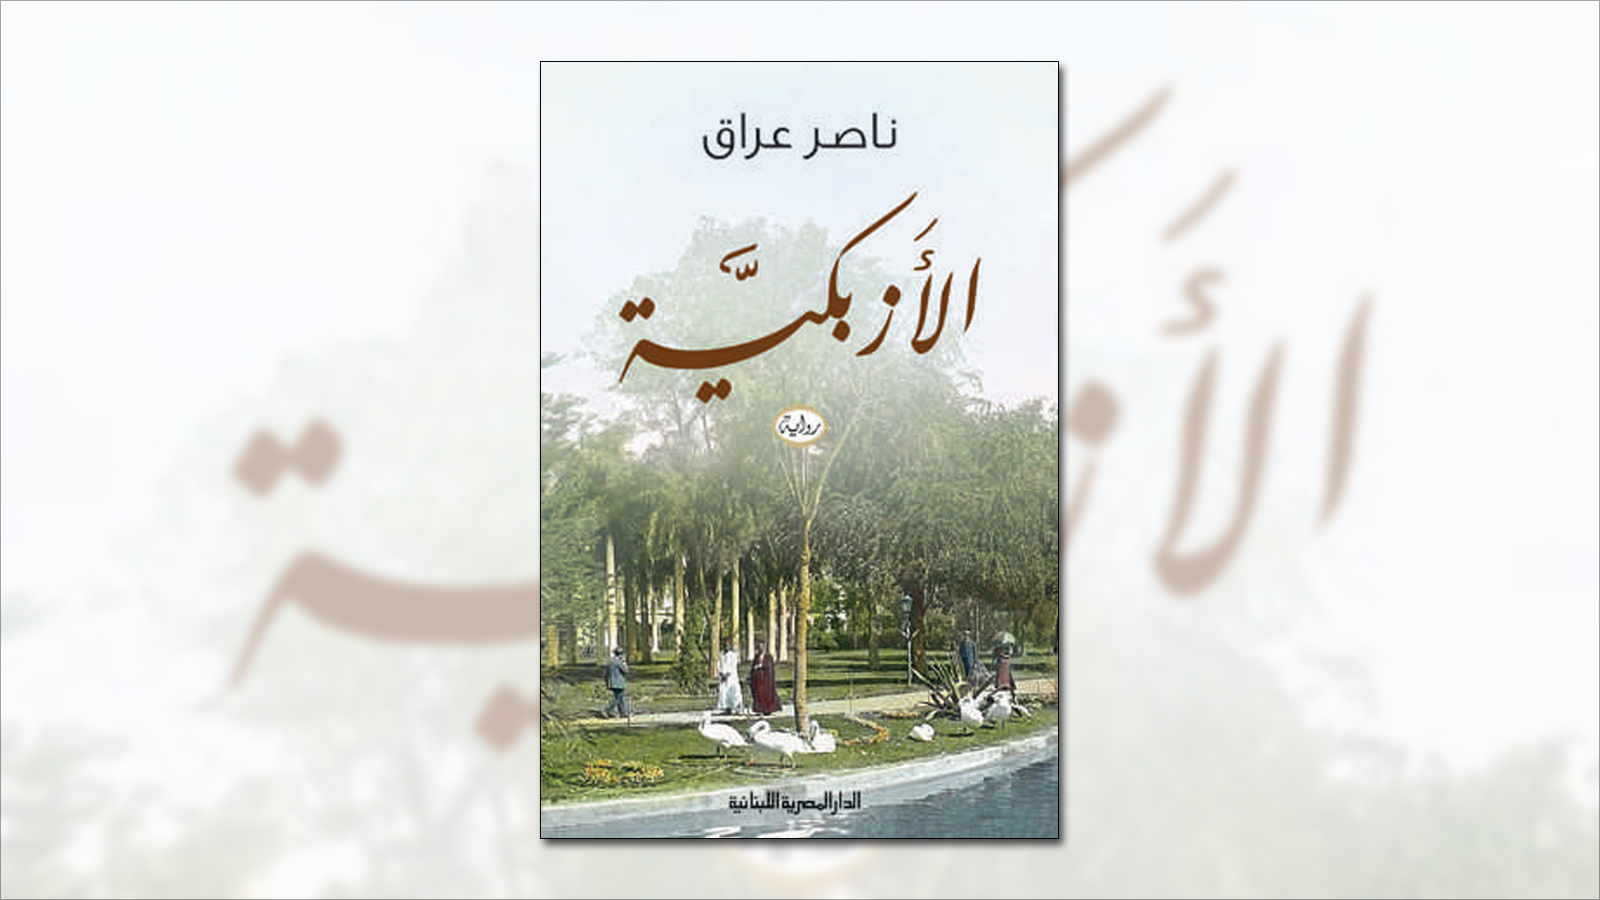 ناصر عراق فاز بجائزة كتارا للرواية العربية العام الماضي عن رواية 